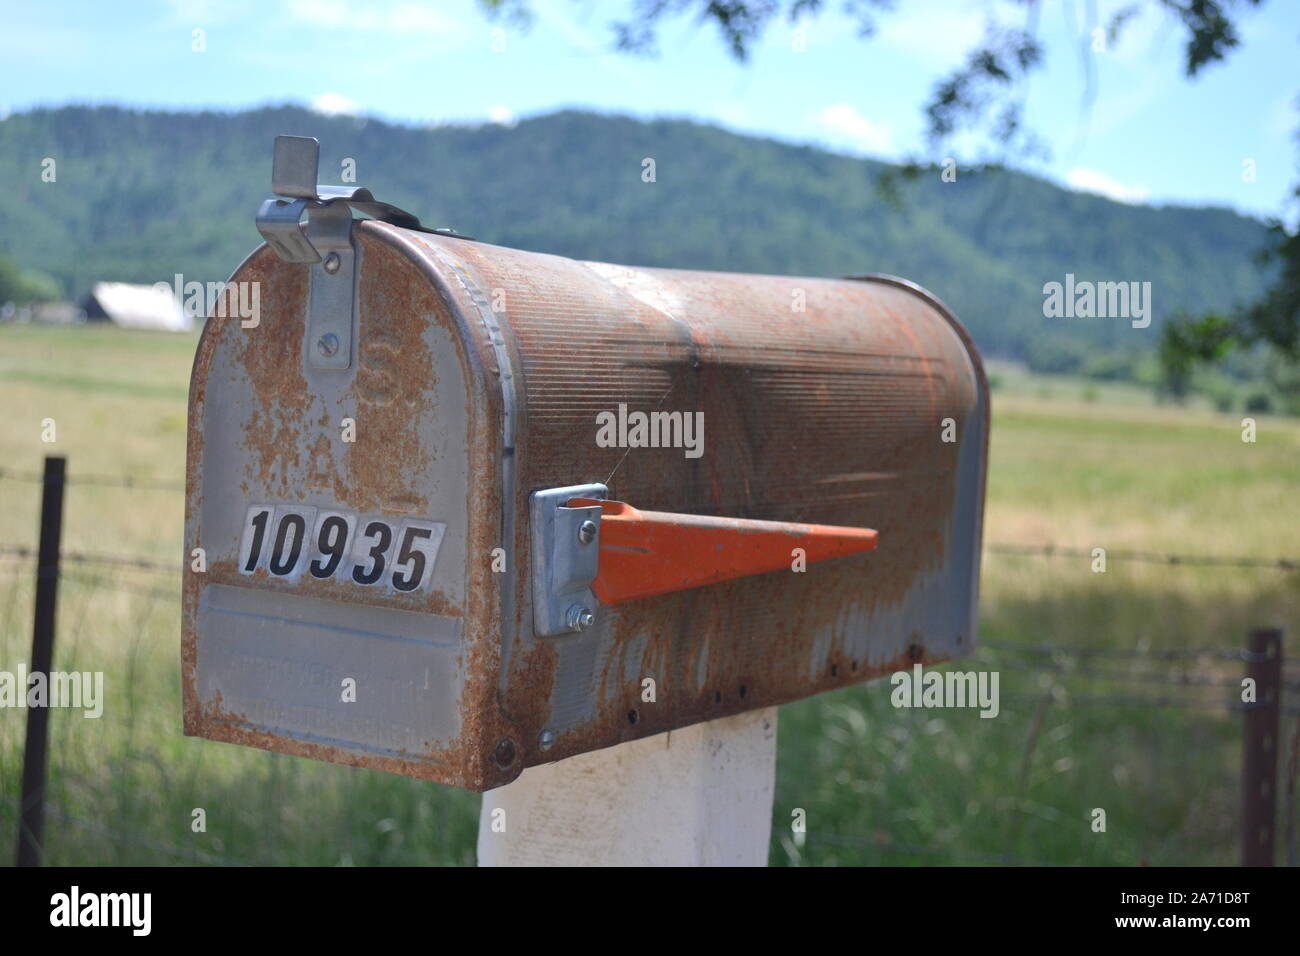 buzón de correo, buzón de correo, buzones de correo Fotografía de